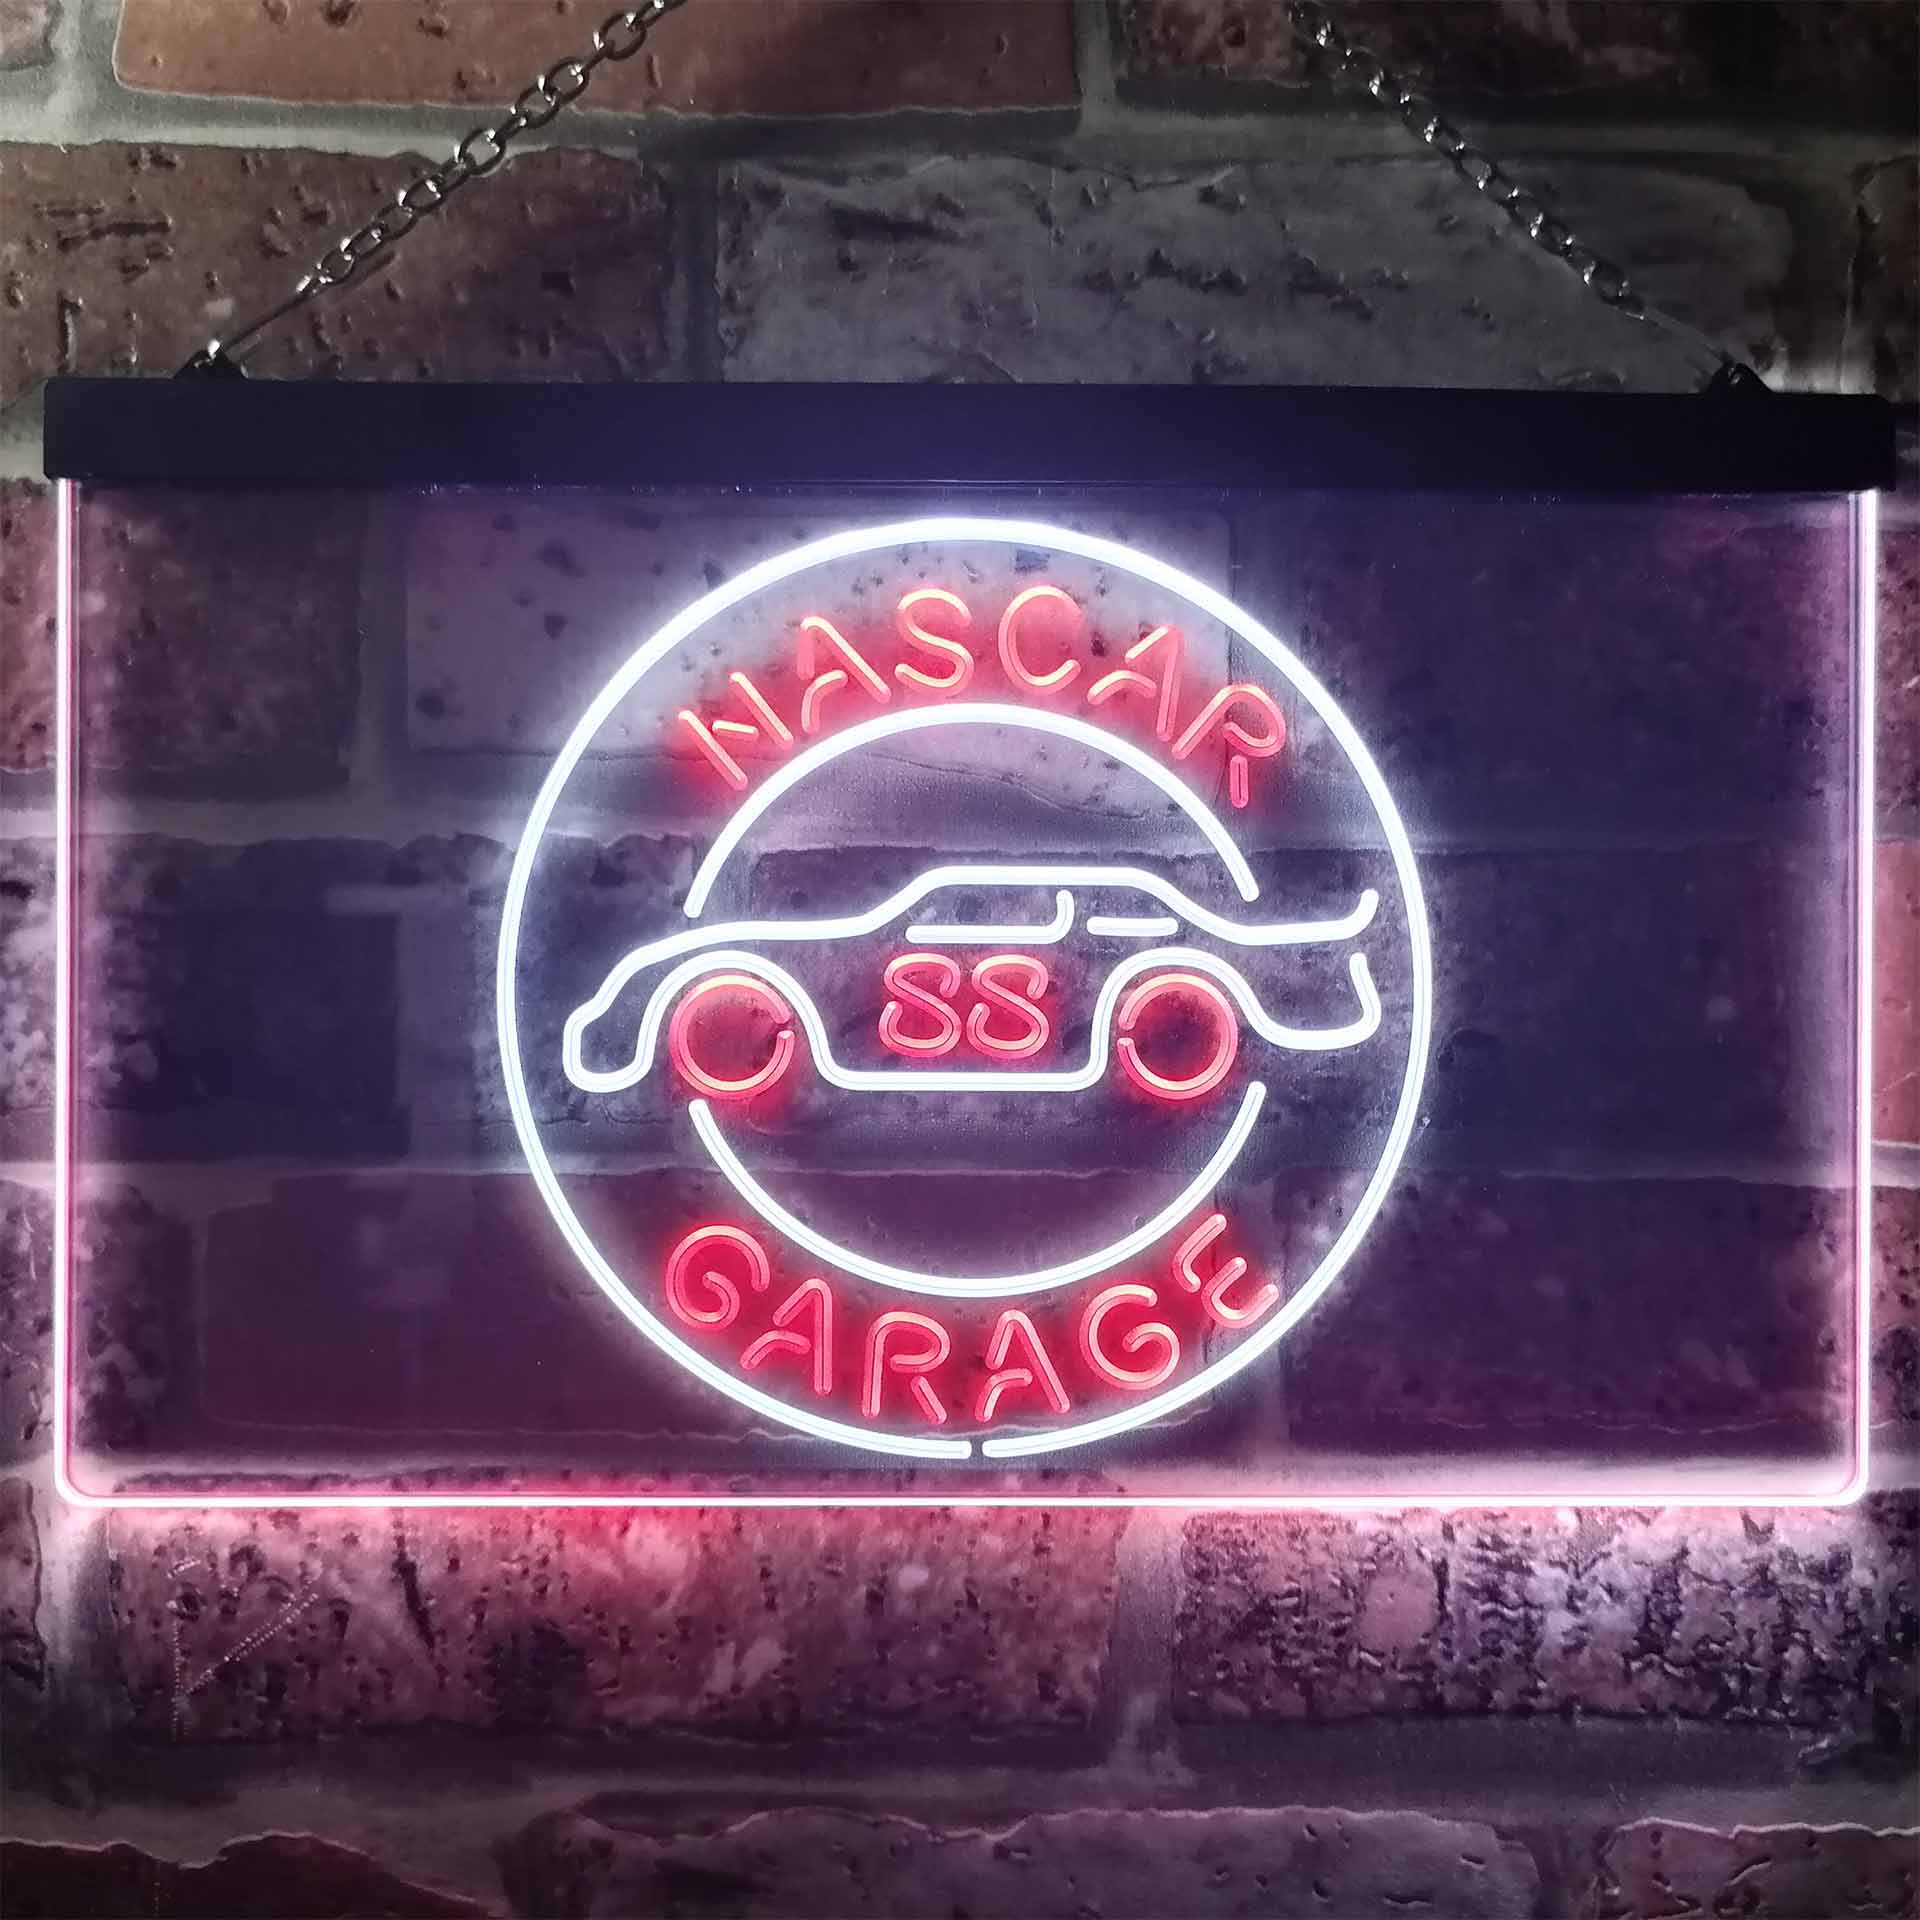 Nascar 88 Garage Dale Jr. Dual Color LED Neon Sign ProLedSign